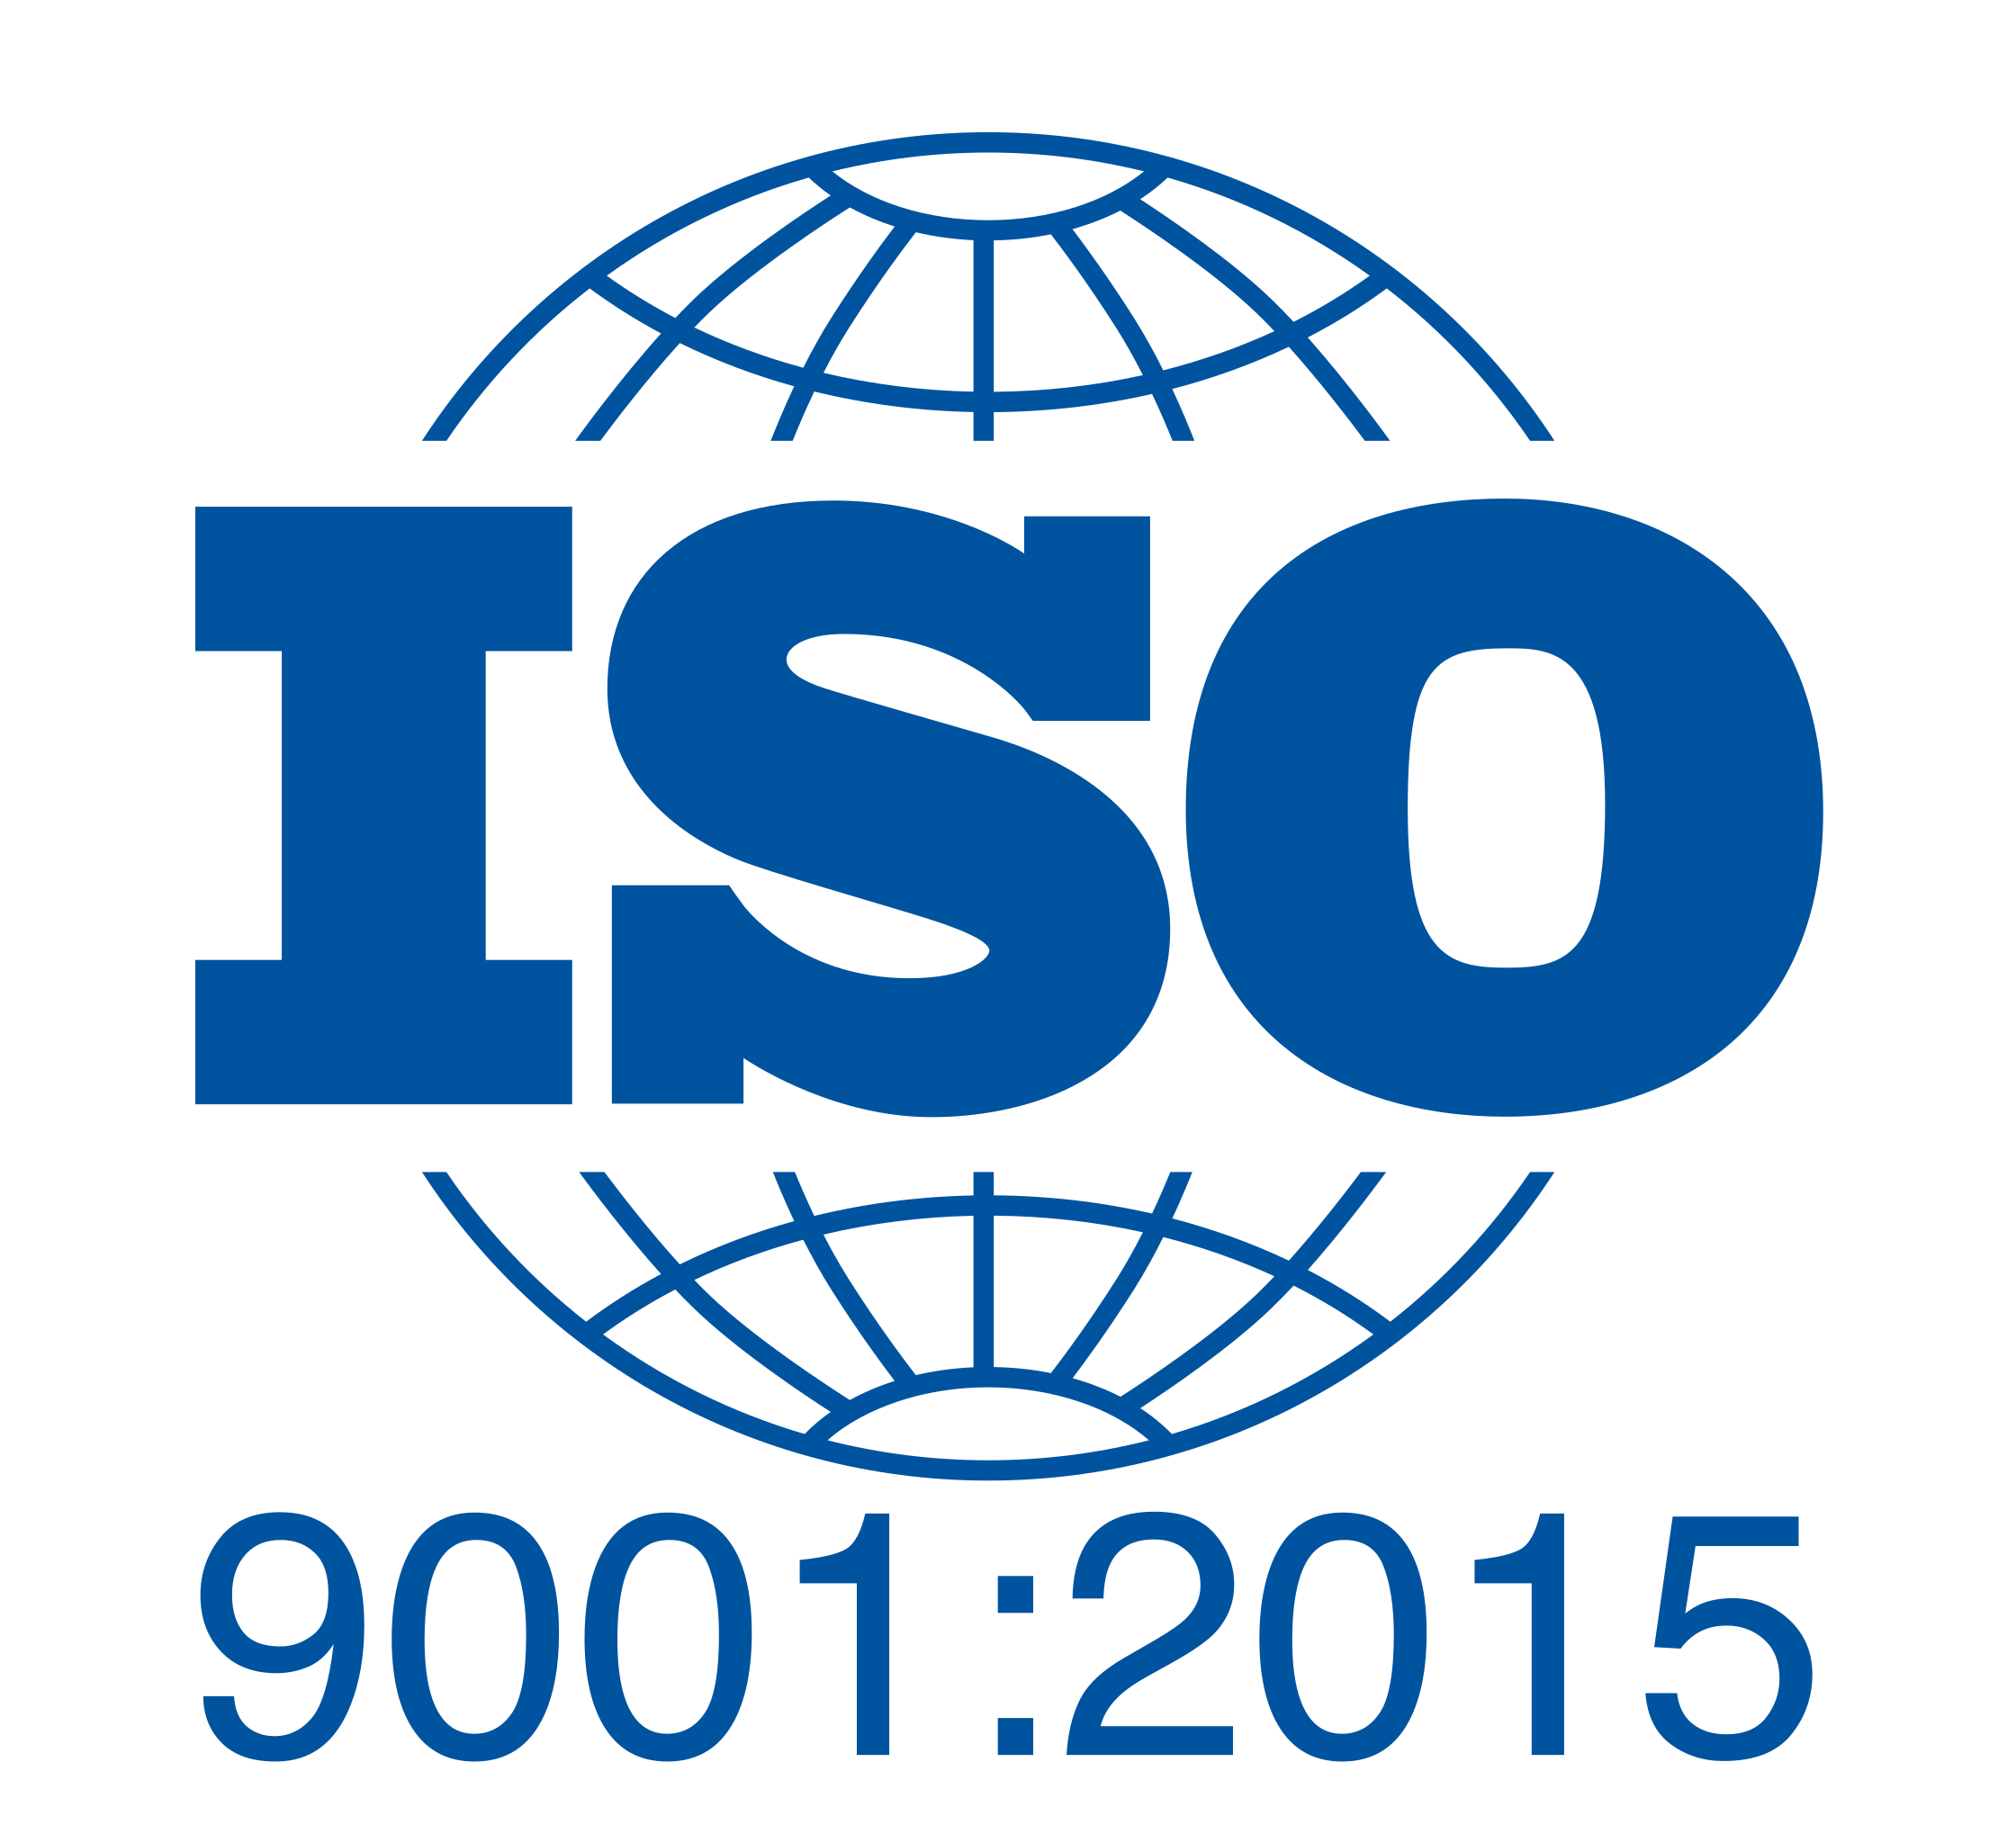 20 Manfaat dan Tujuan Sistem Manajemen Mutu ISO 9001